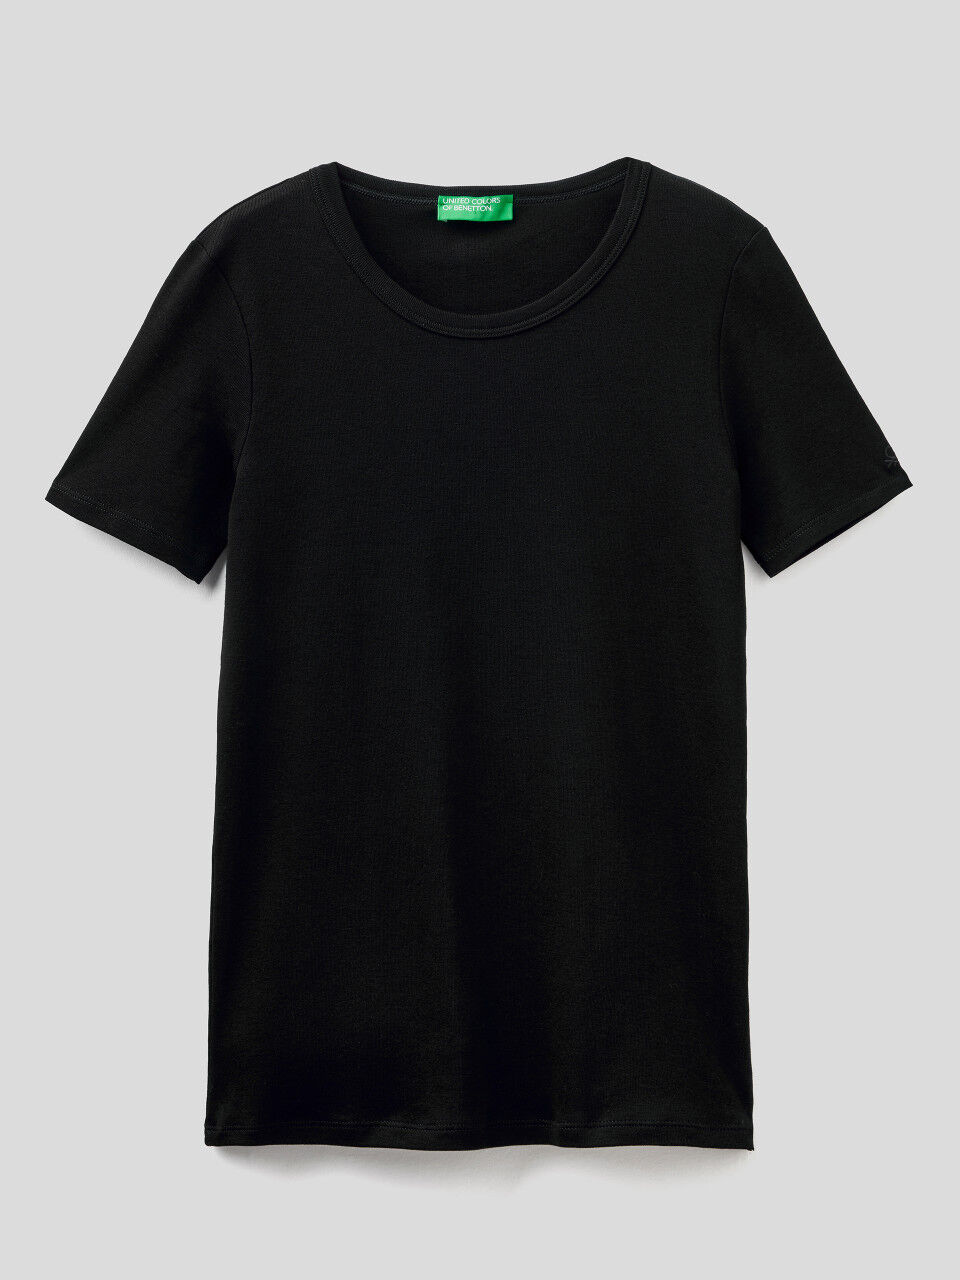 Rabatt 96 % DAMEN Hemden & T-Shirts Spitze United colors of benetton T-Shirt Weiß S 